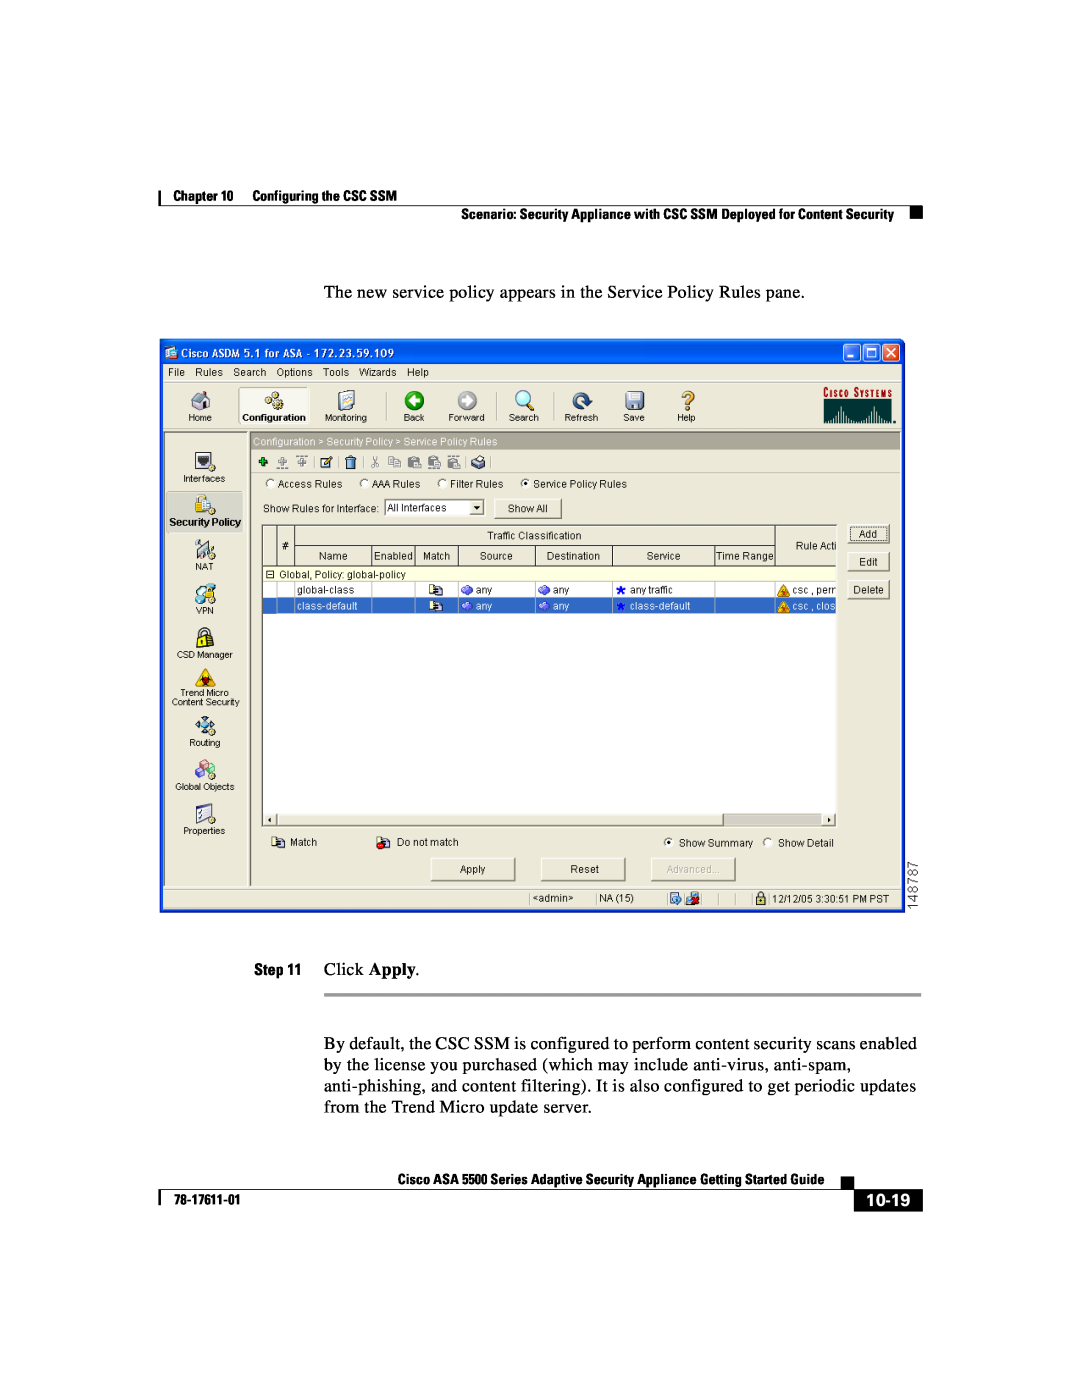 Cisco Systems ASA 5500 manual 10-19, Click Apply 